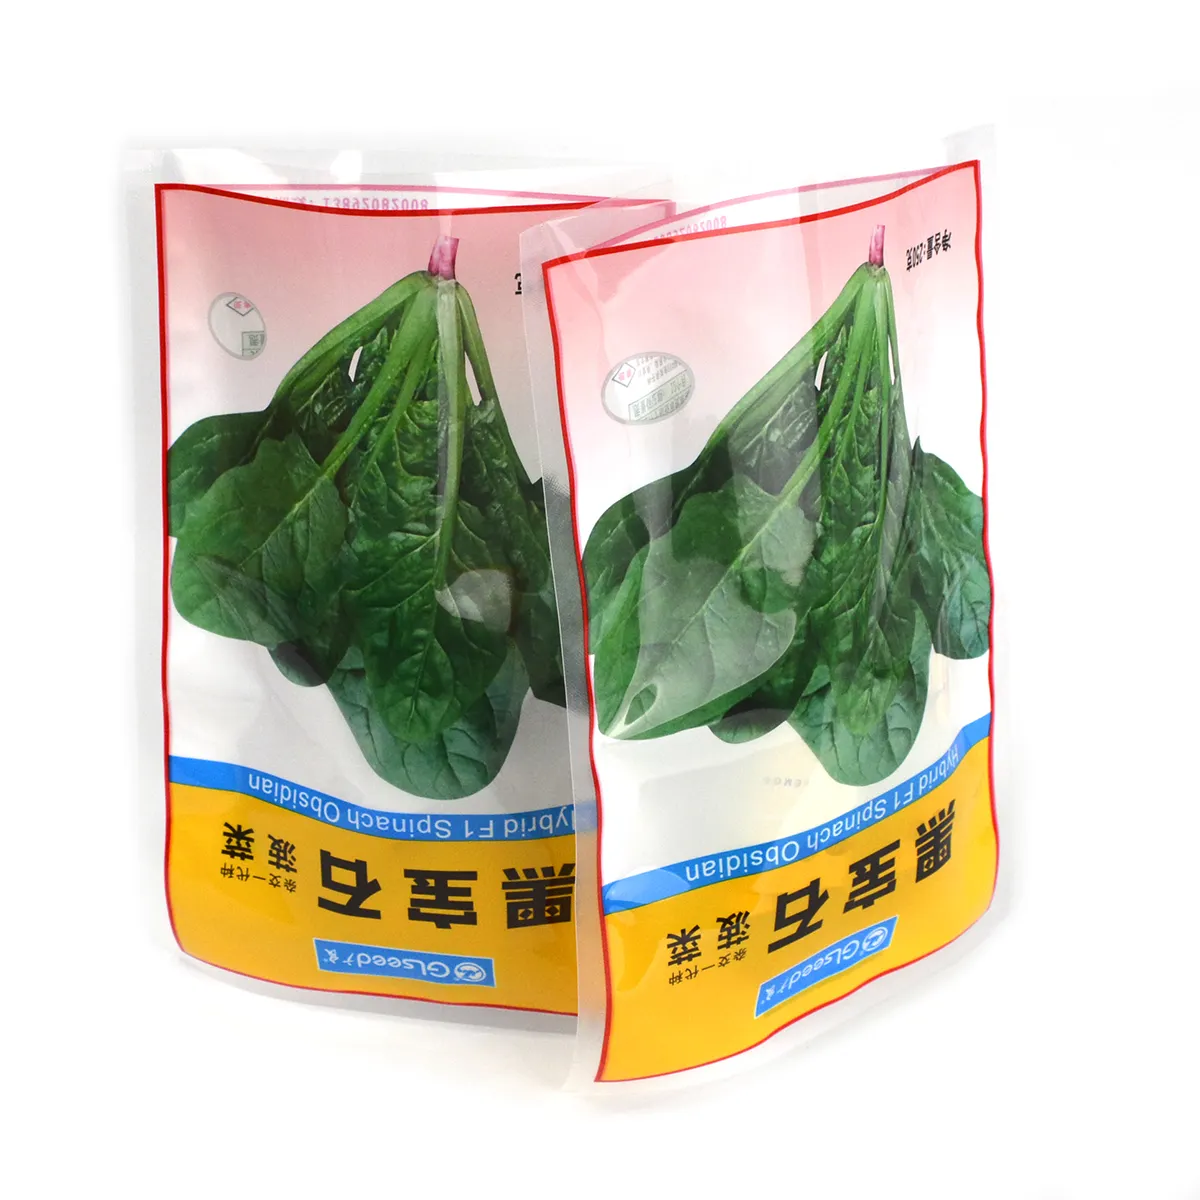 Vendita calda di nylon del sacchetto di plastica per la confezione di semi di verdure